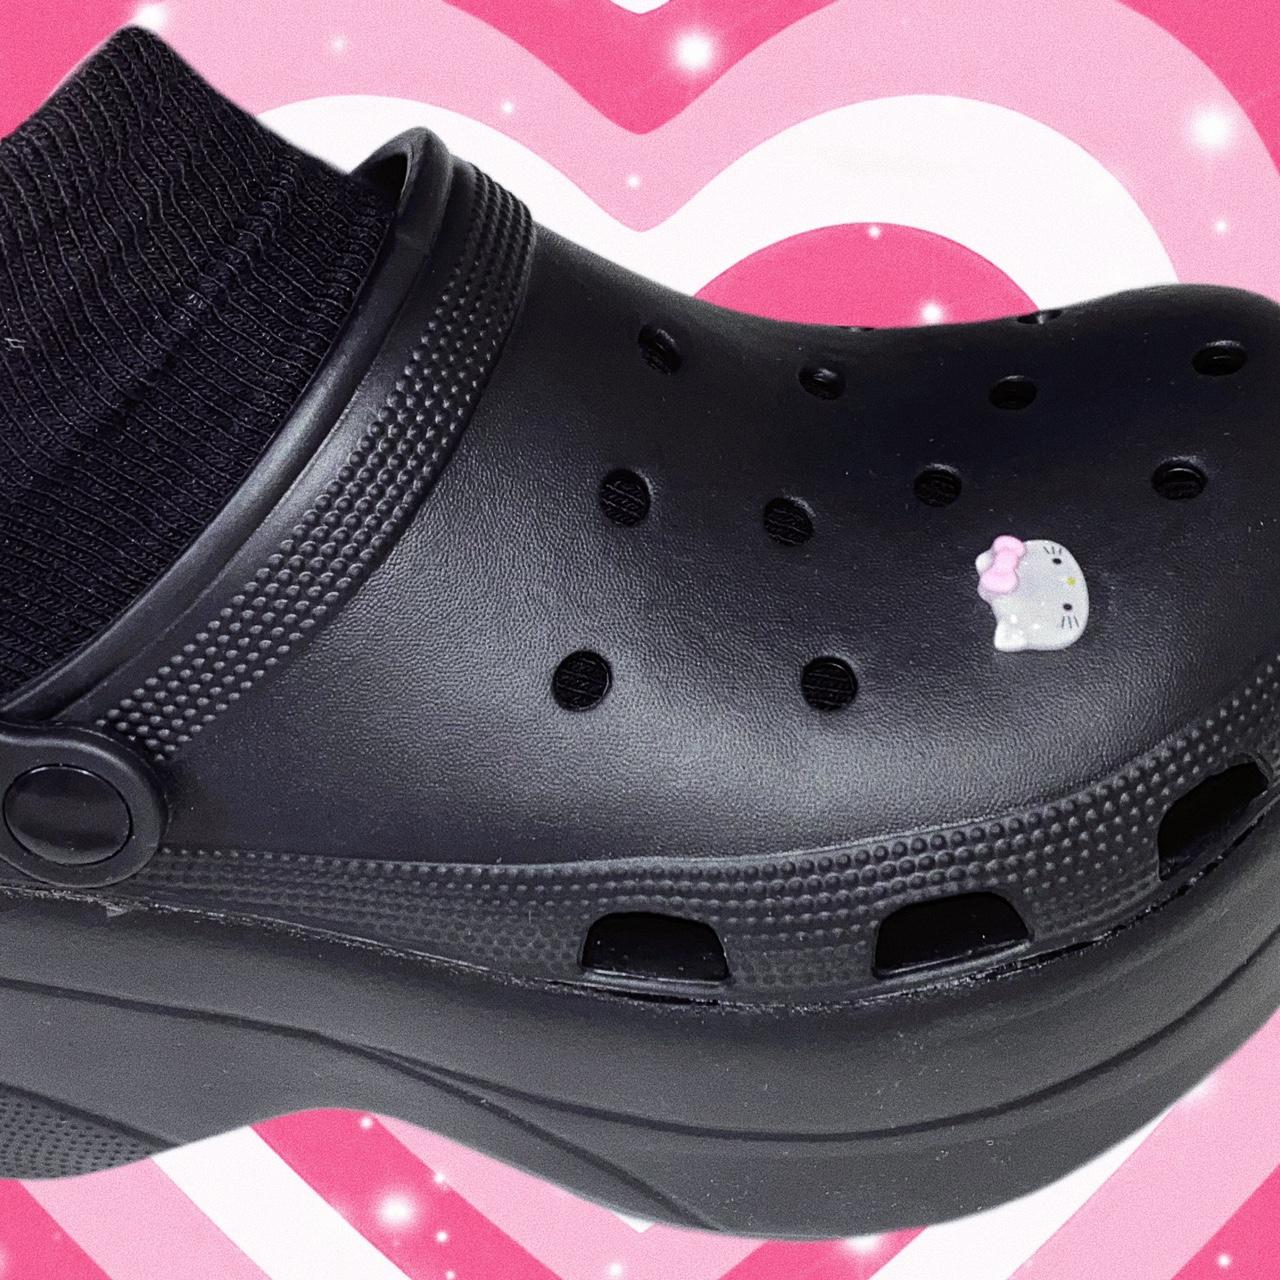 Croc Shoe Charms Jibbitz alphabet letters pink black - Depop